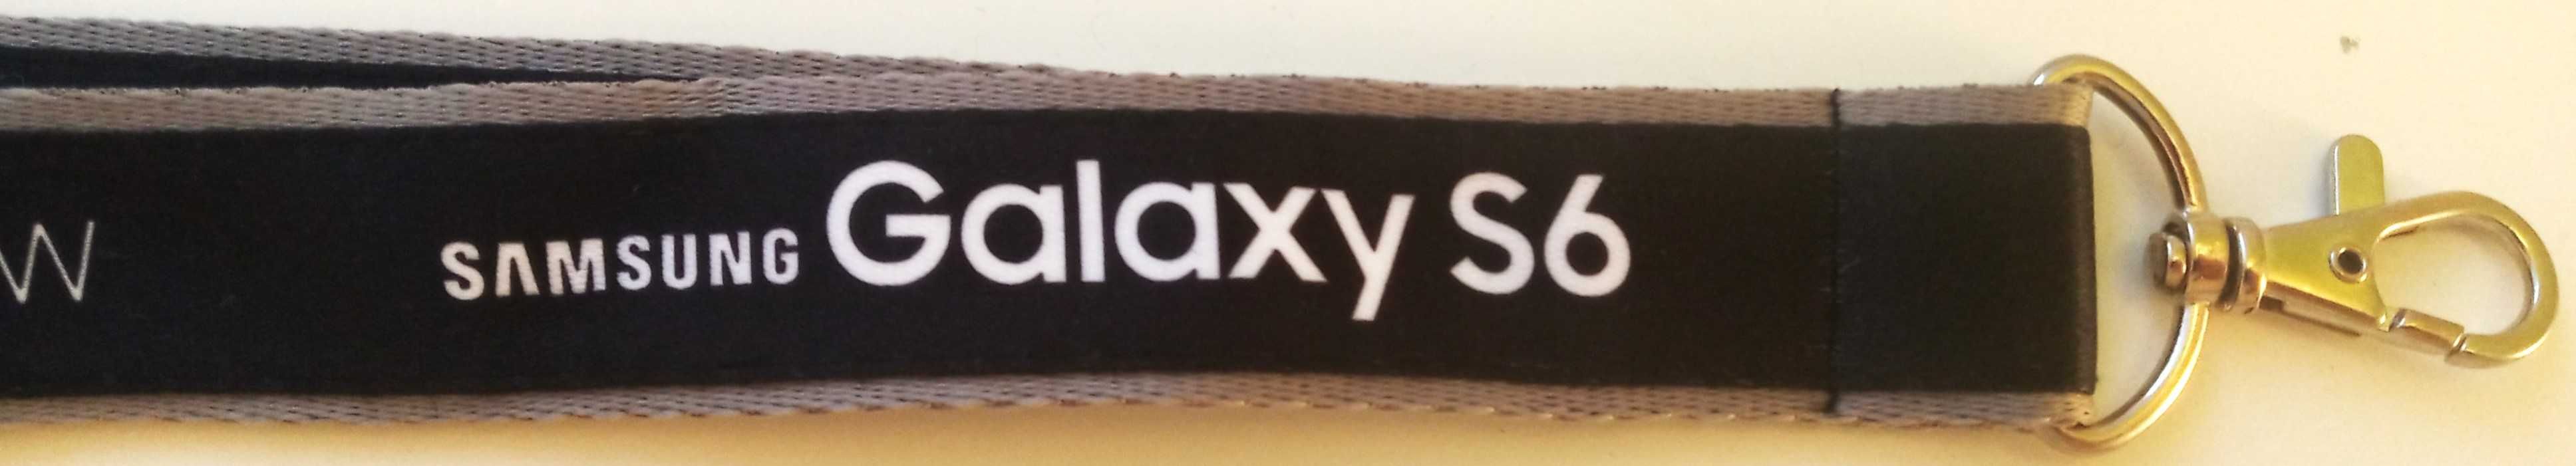 Smycz z karabińczykiem czarno-szara Samsung klucze etui identyfikator